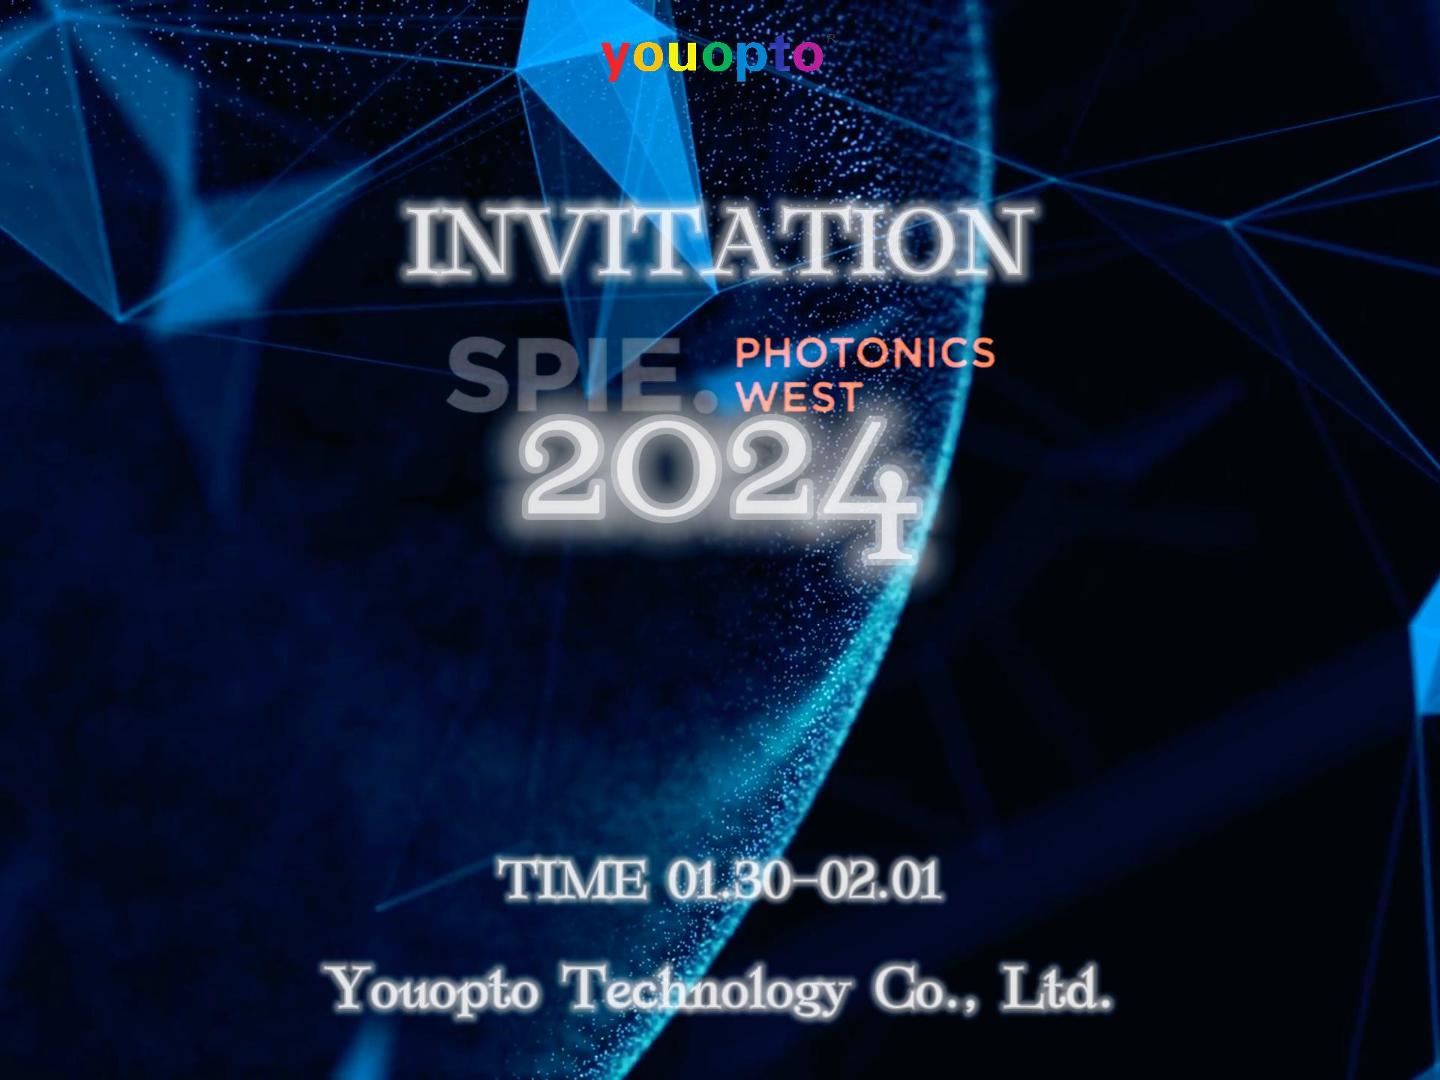 Youopto SPIE Photonics West 2024 Invitation